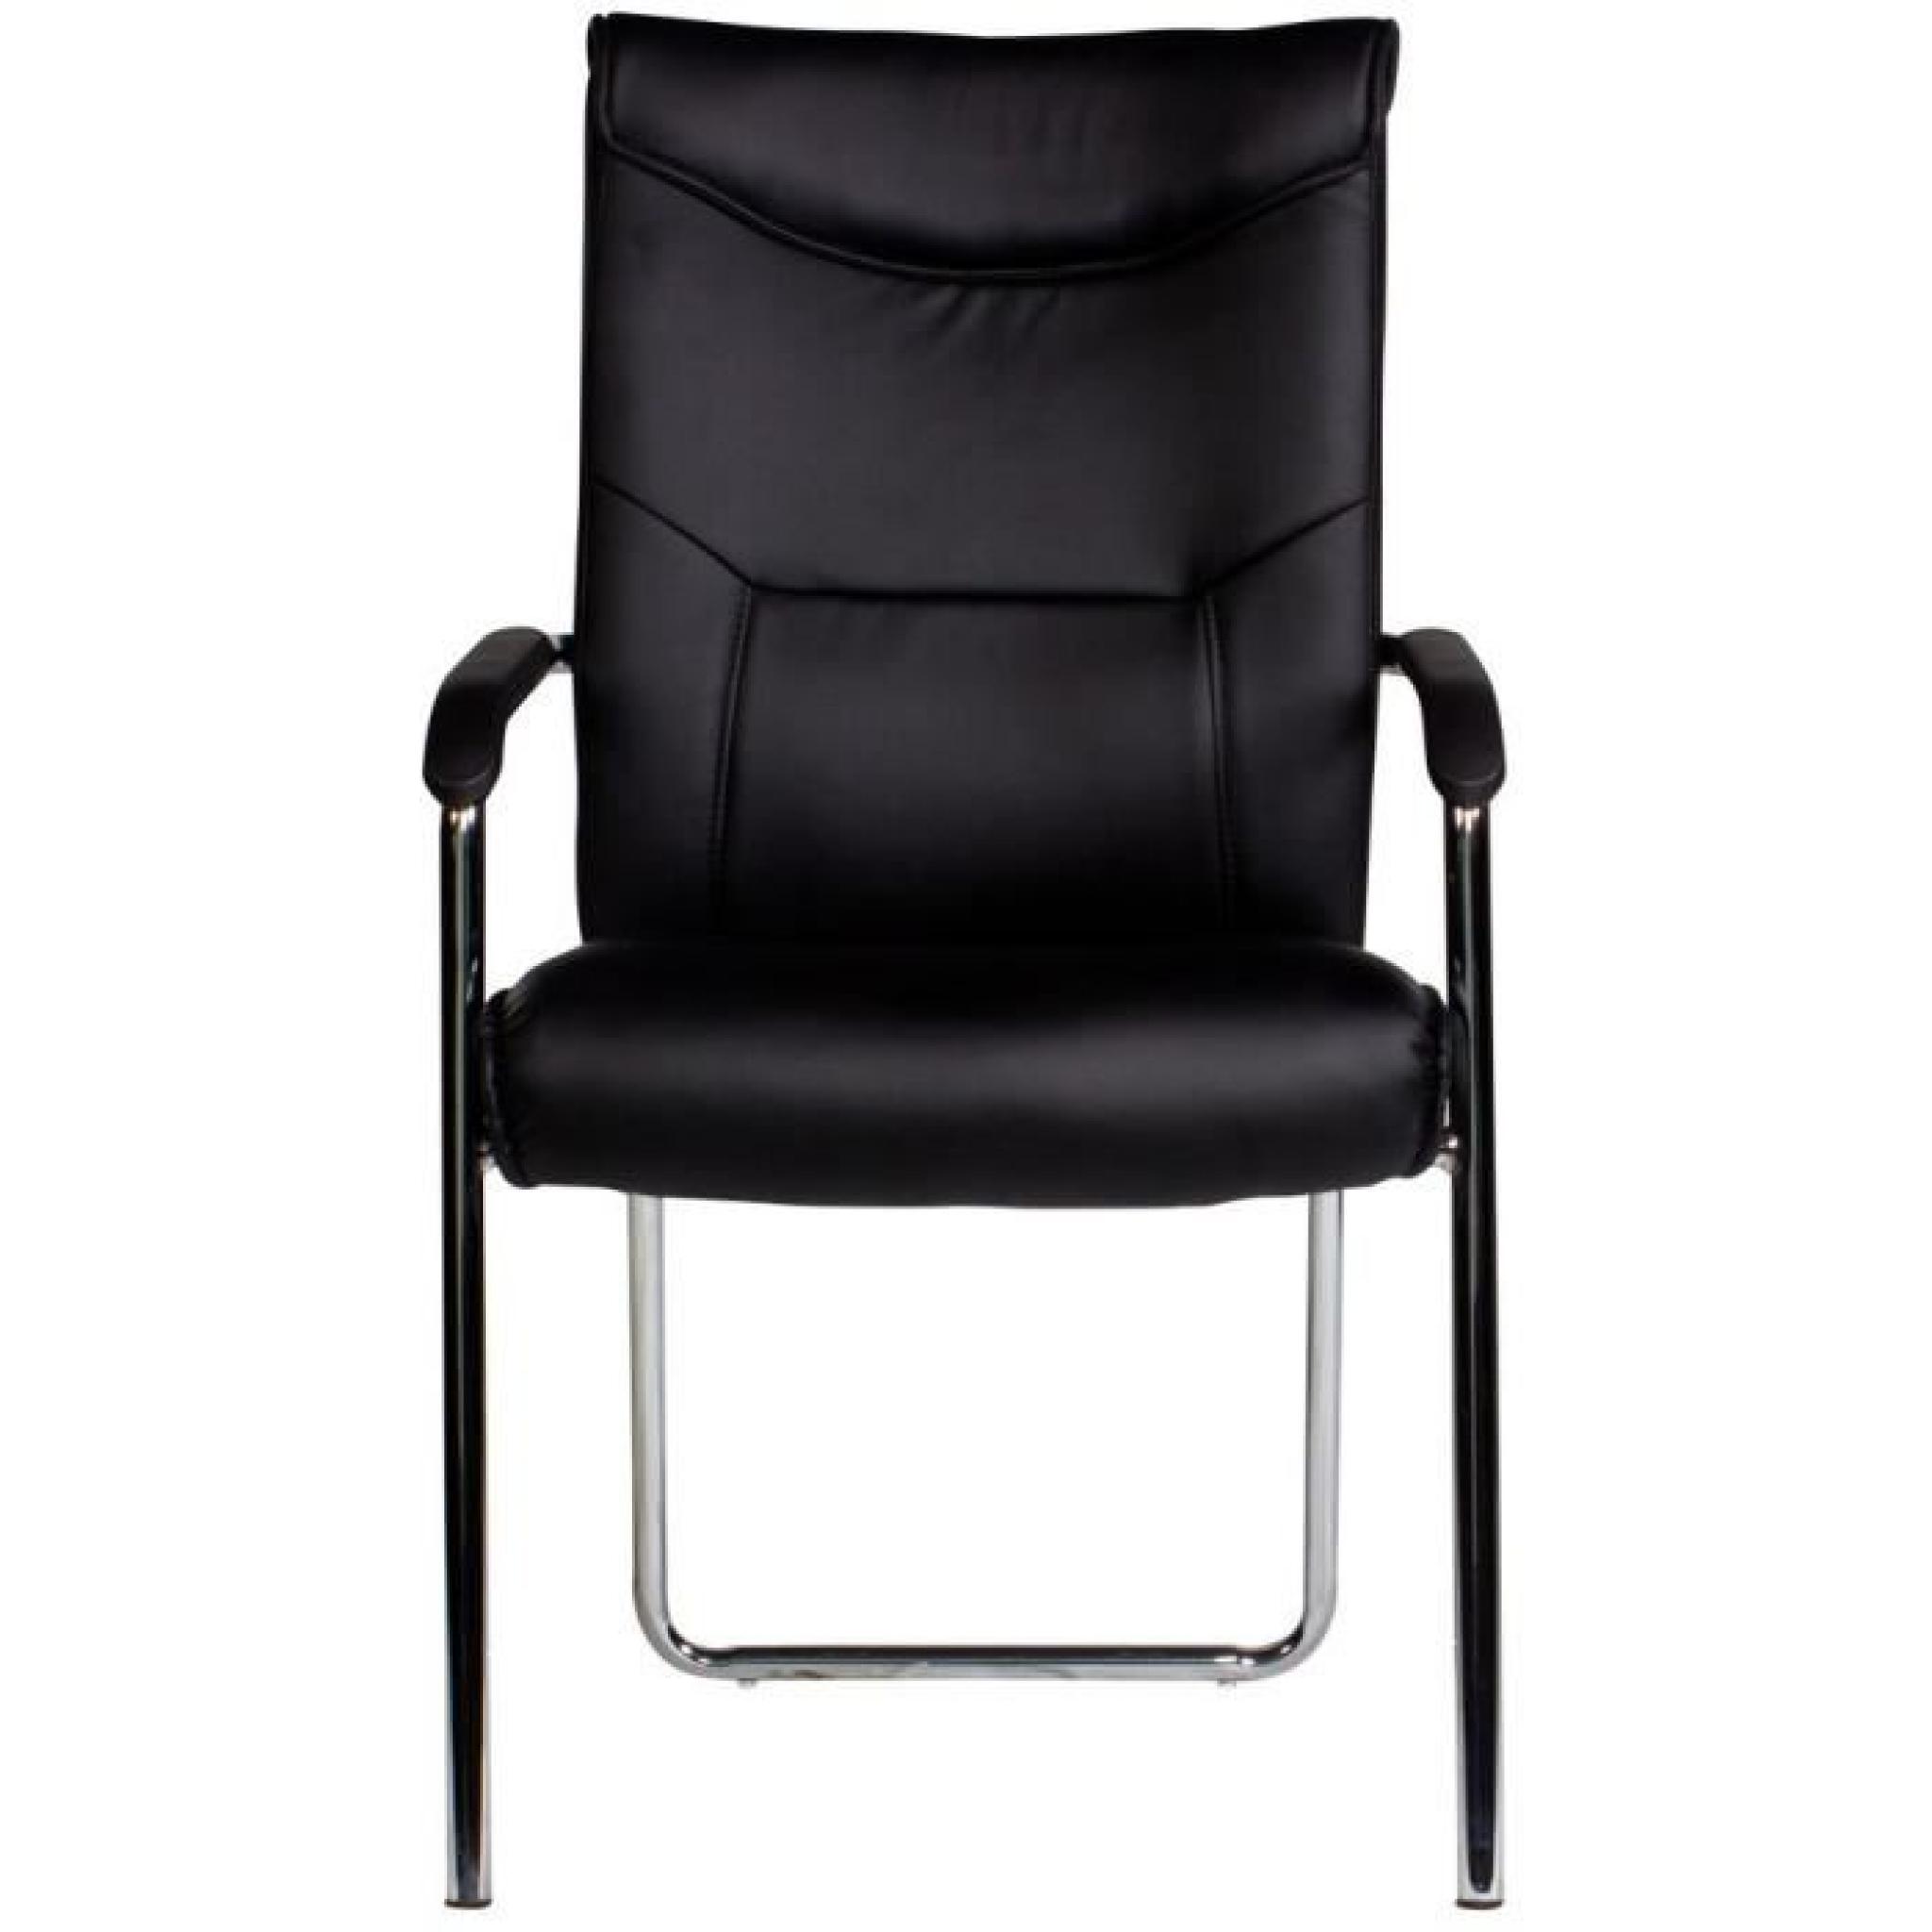 Chaise noir et acier chromé ultra moderne pas cher